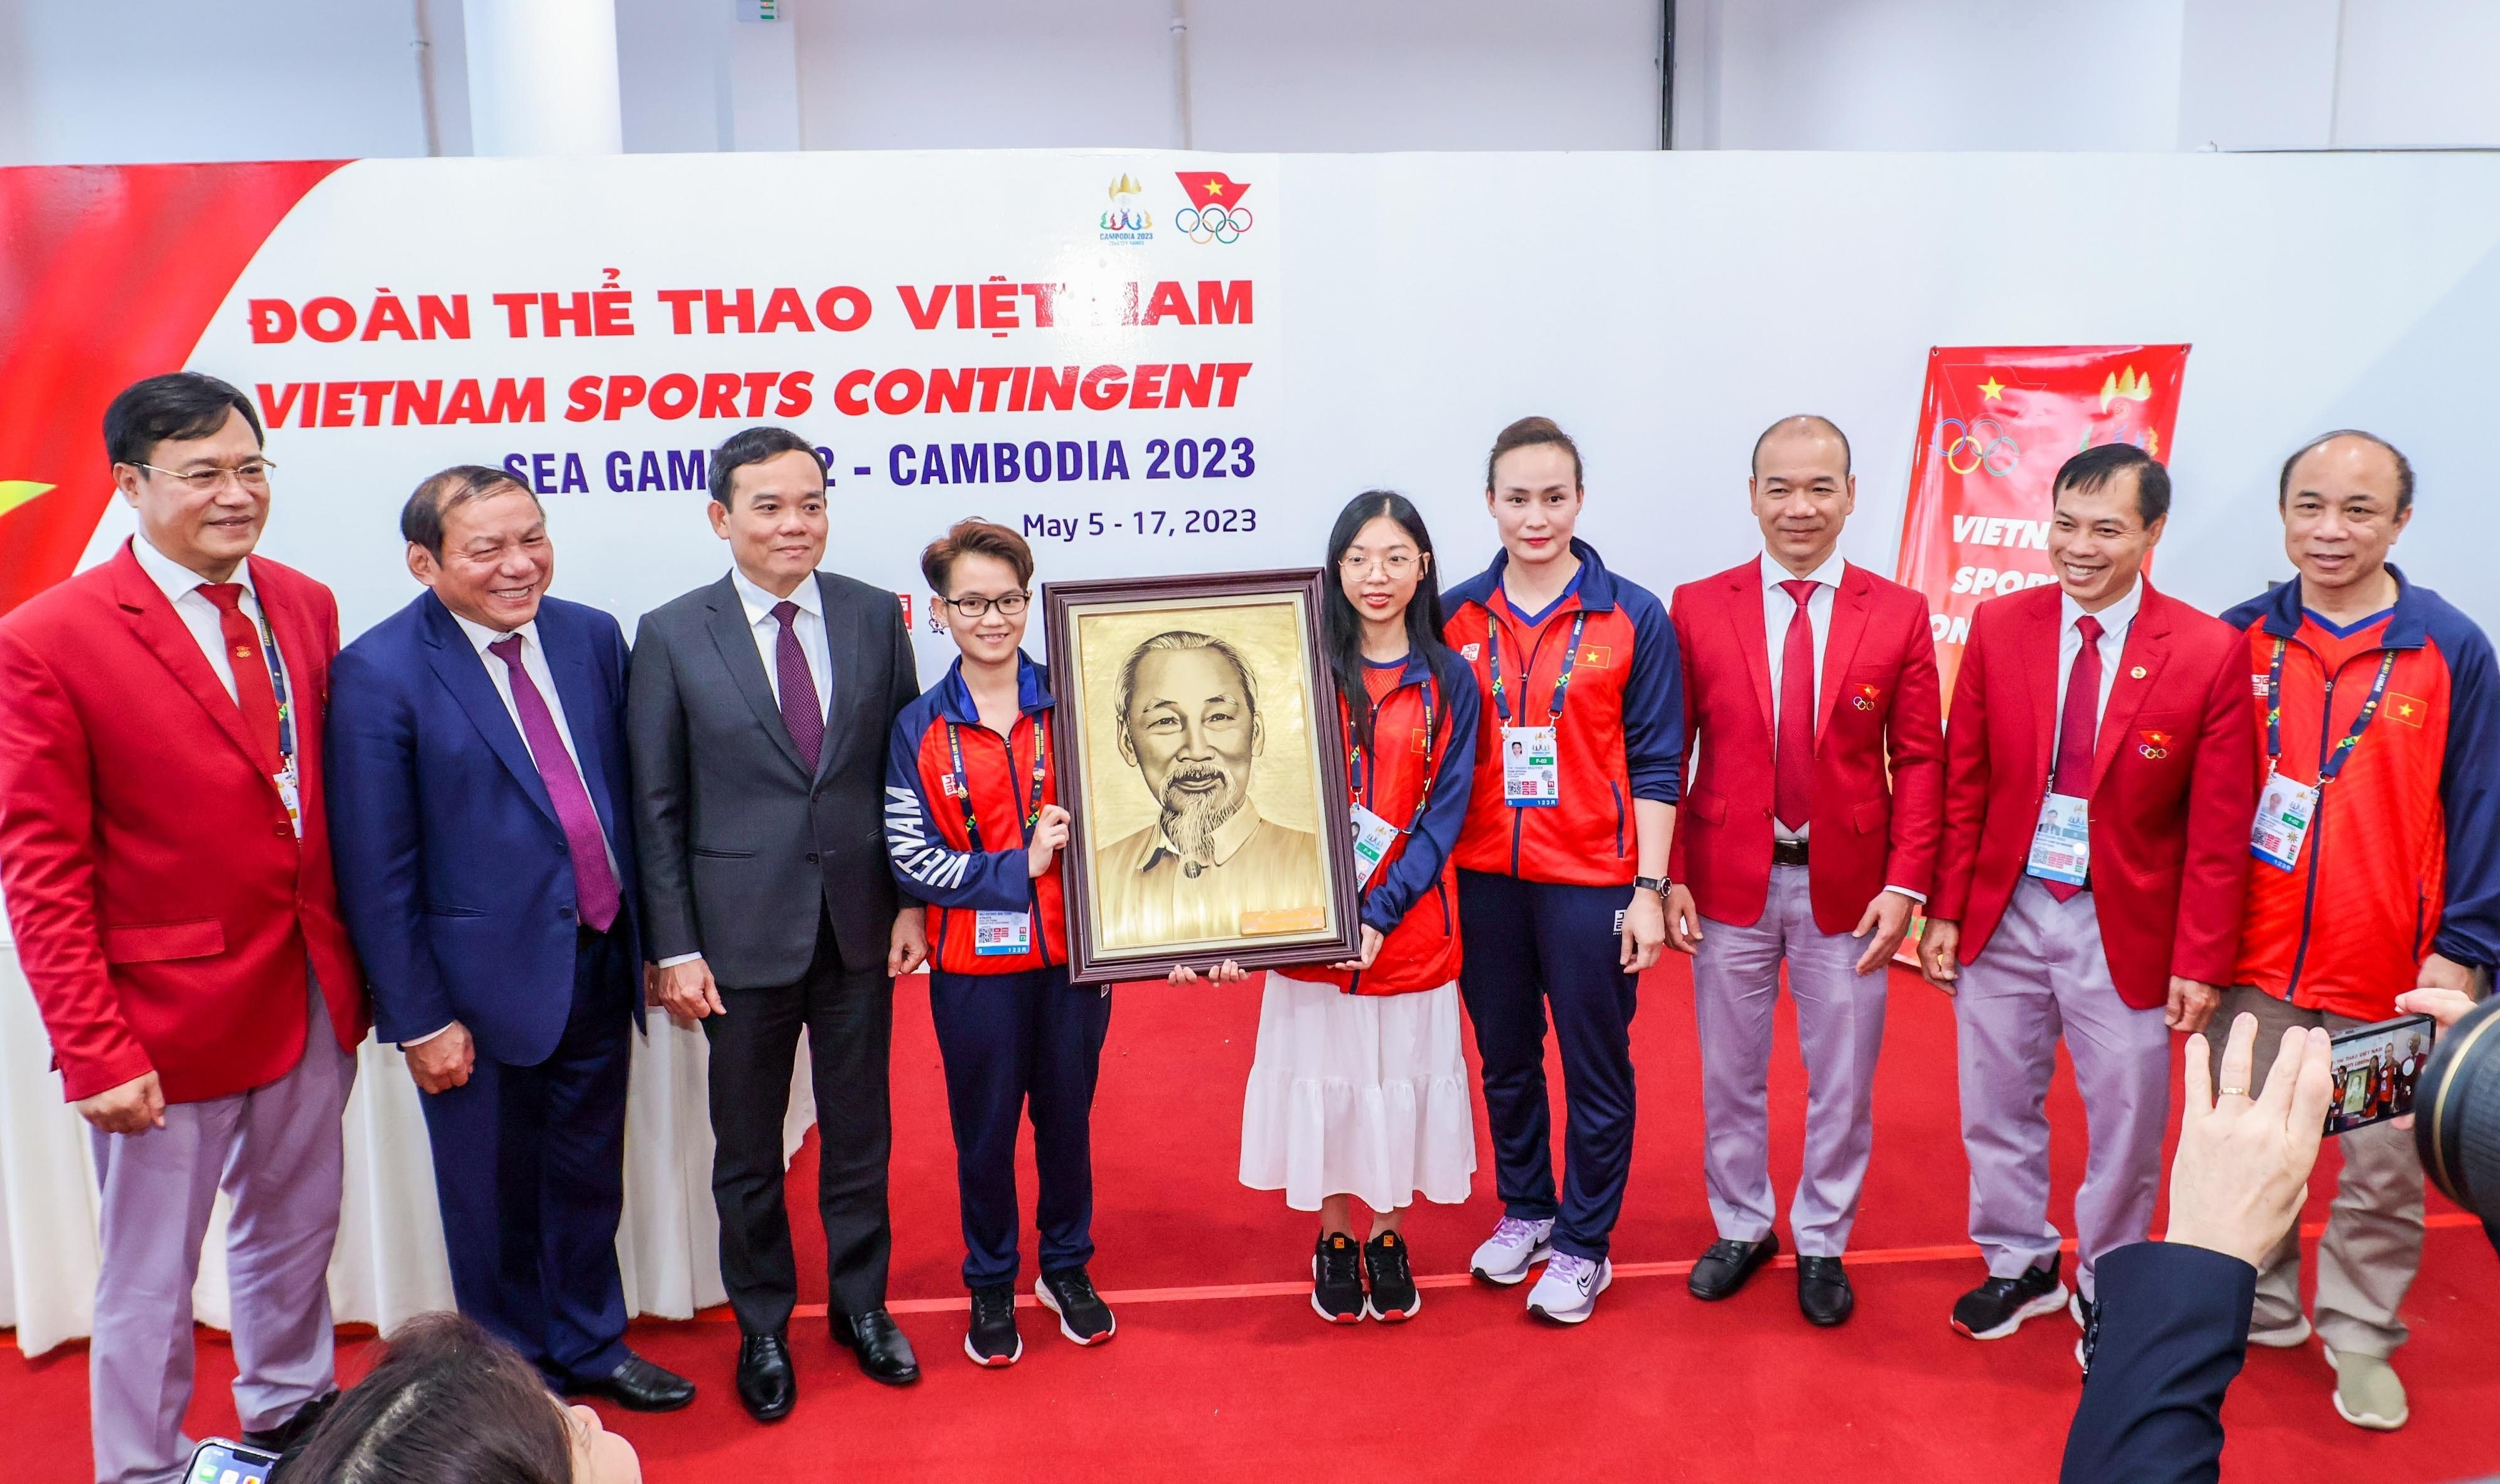 Phó Thủ tướng Trần Lưu Quang: "SEA Games là nơi để tinh thần, văn hoá, sức mạnh của con người Việt Nam toả sáng"